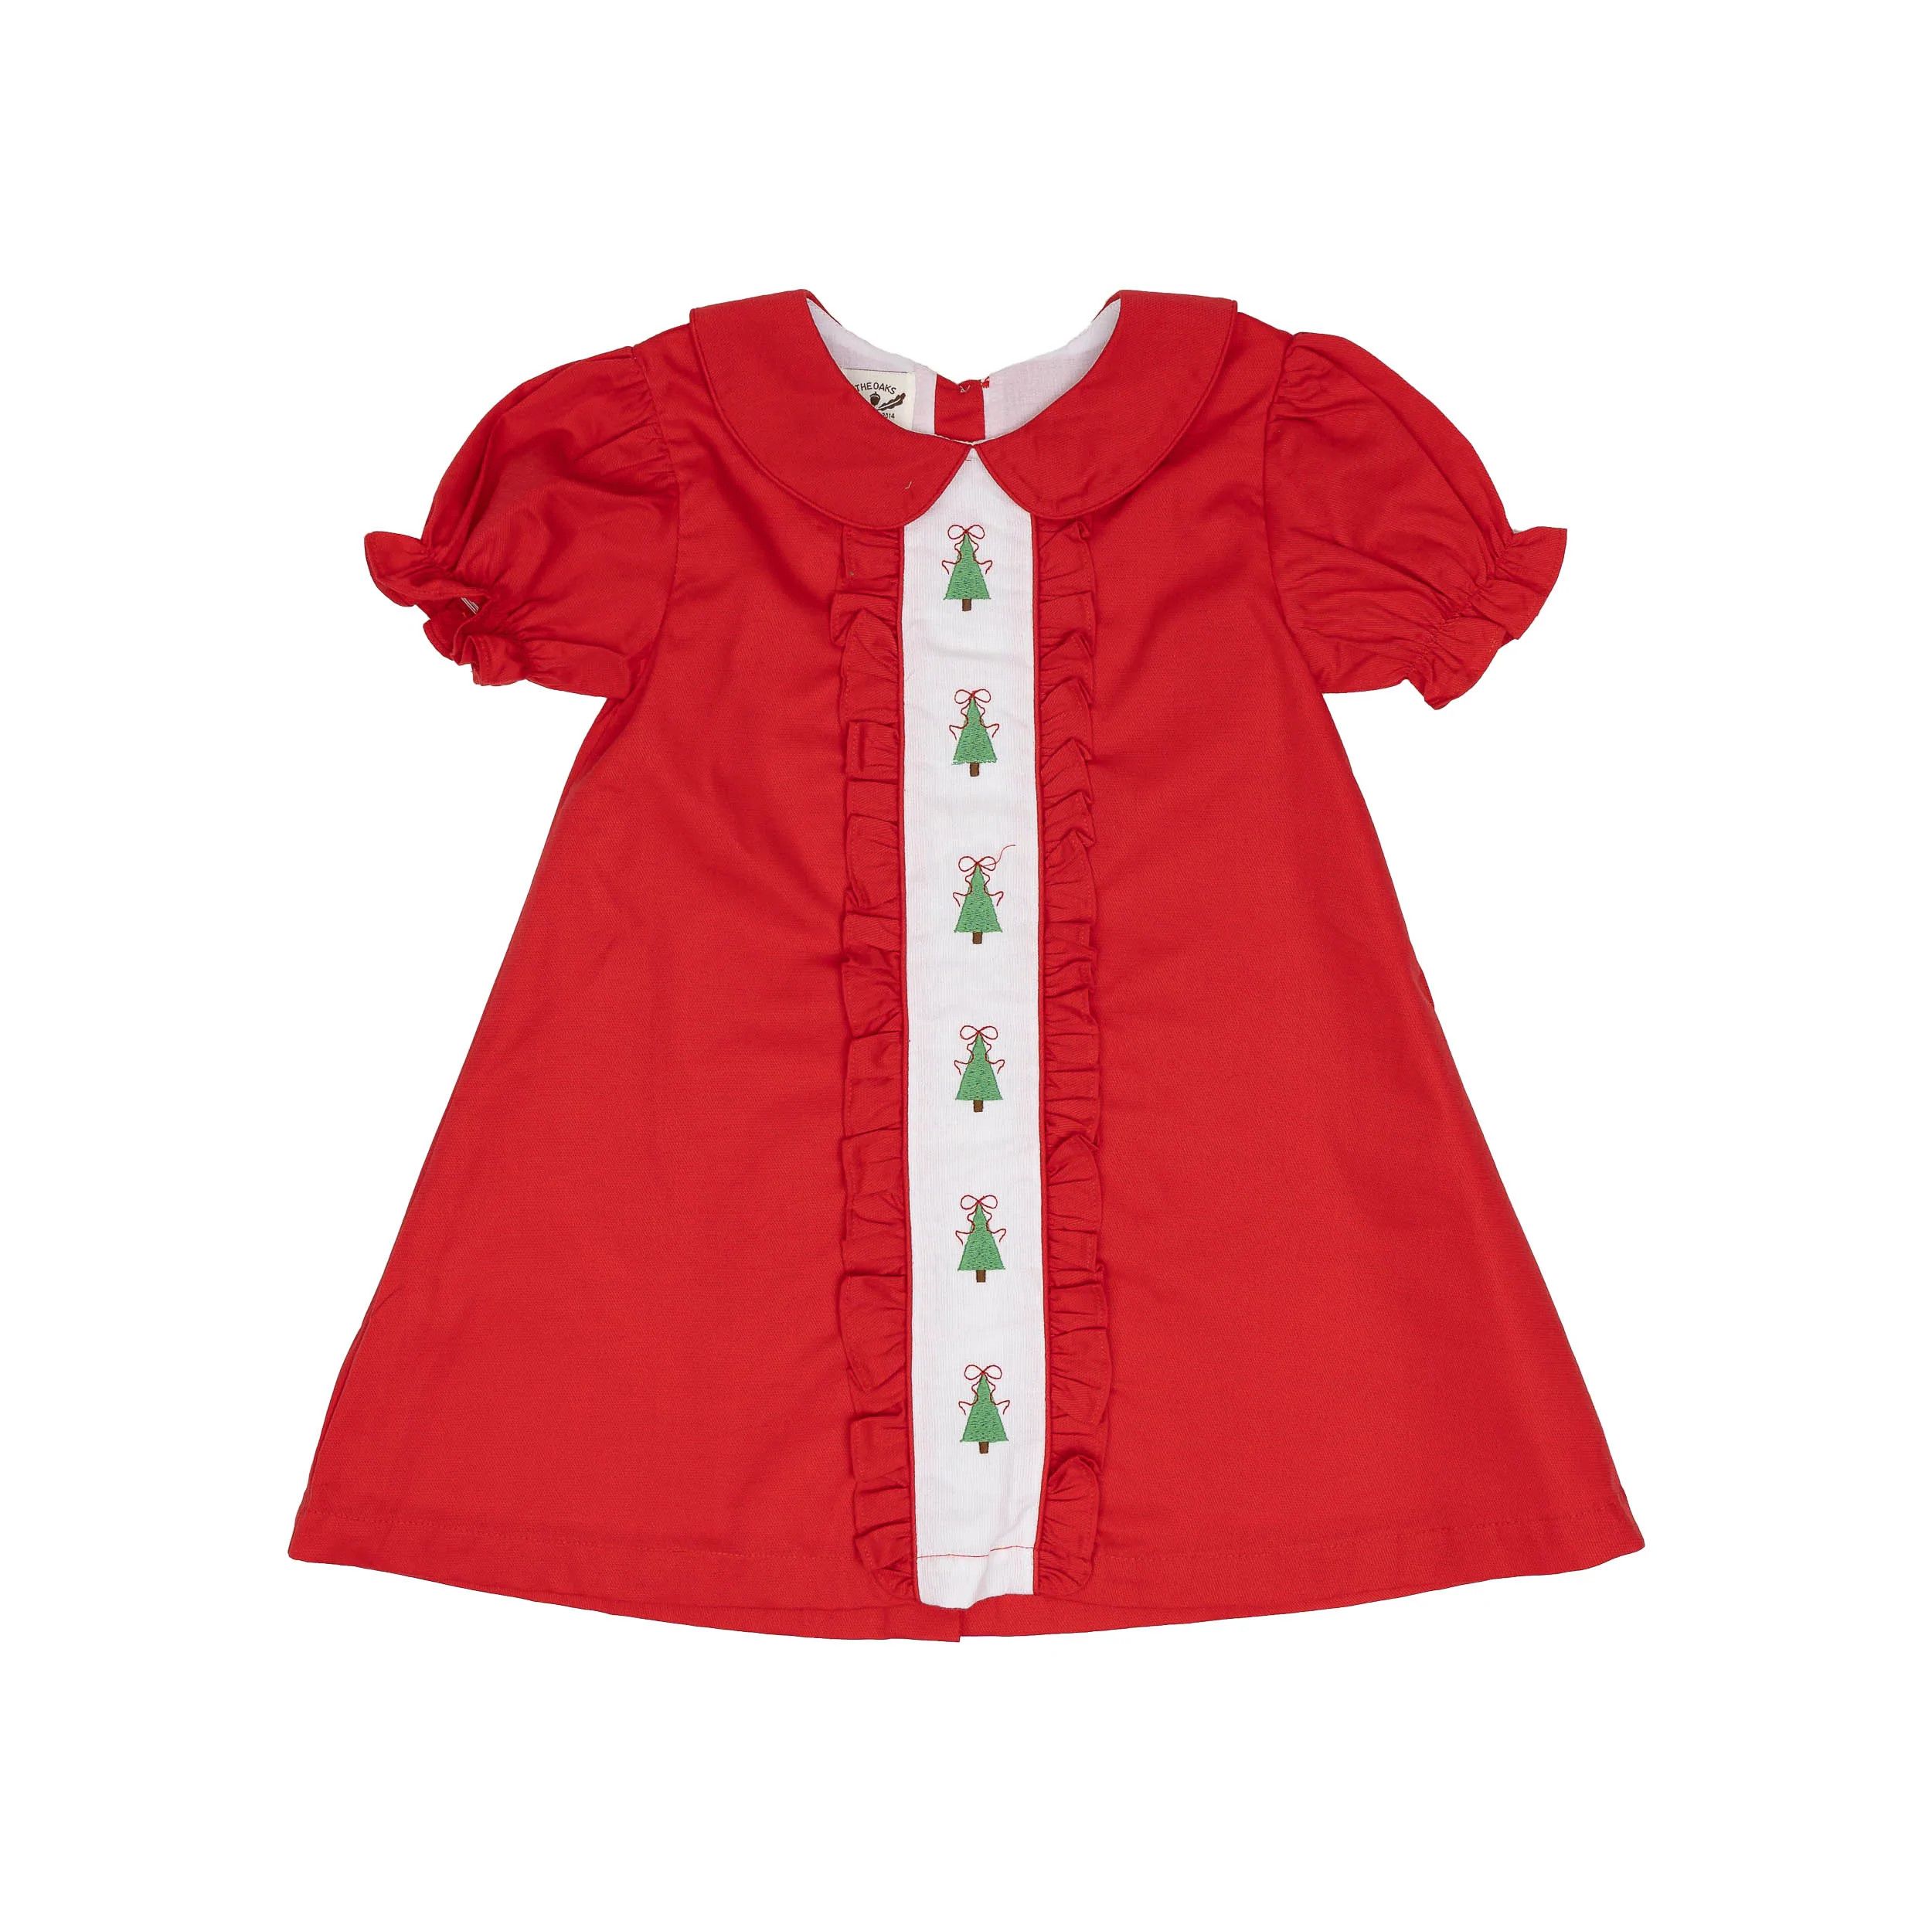 Christina Christmas Tree Dress | The Oaks Apparel Company